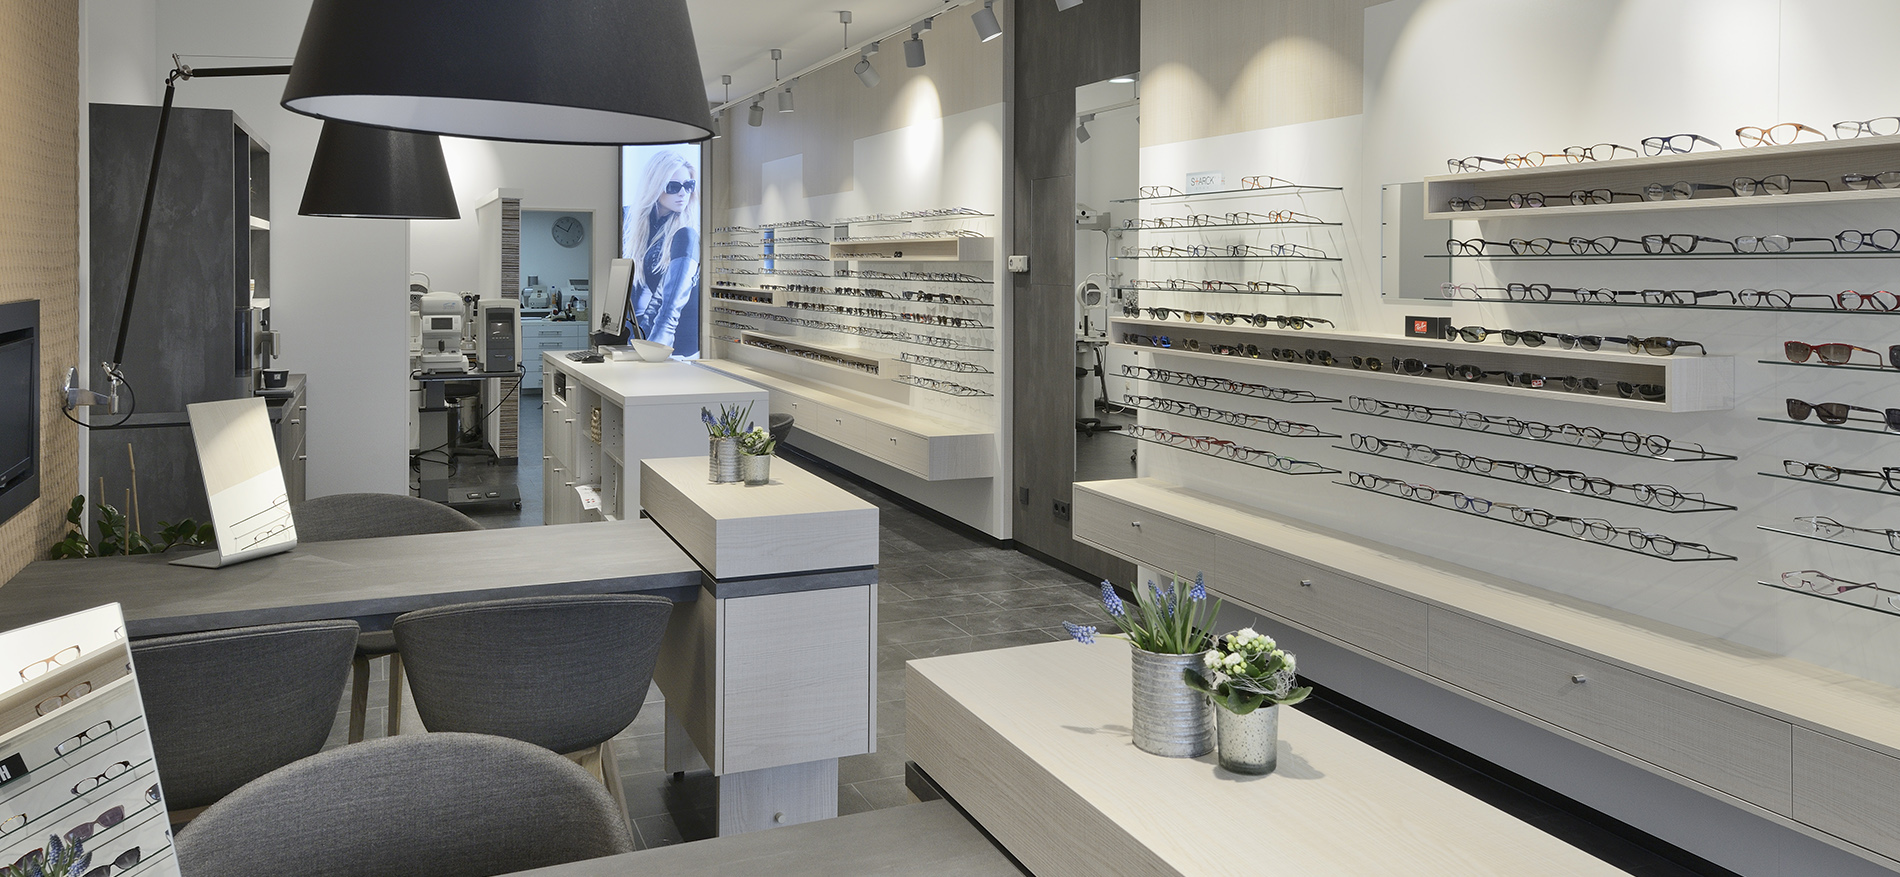 Klöckner Optik fully renovated shop interior - 